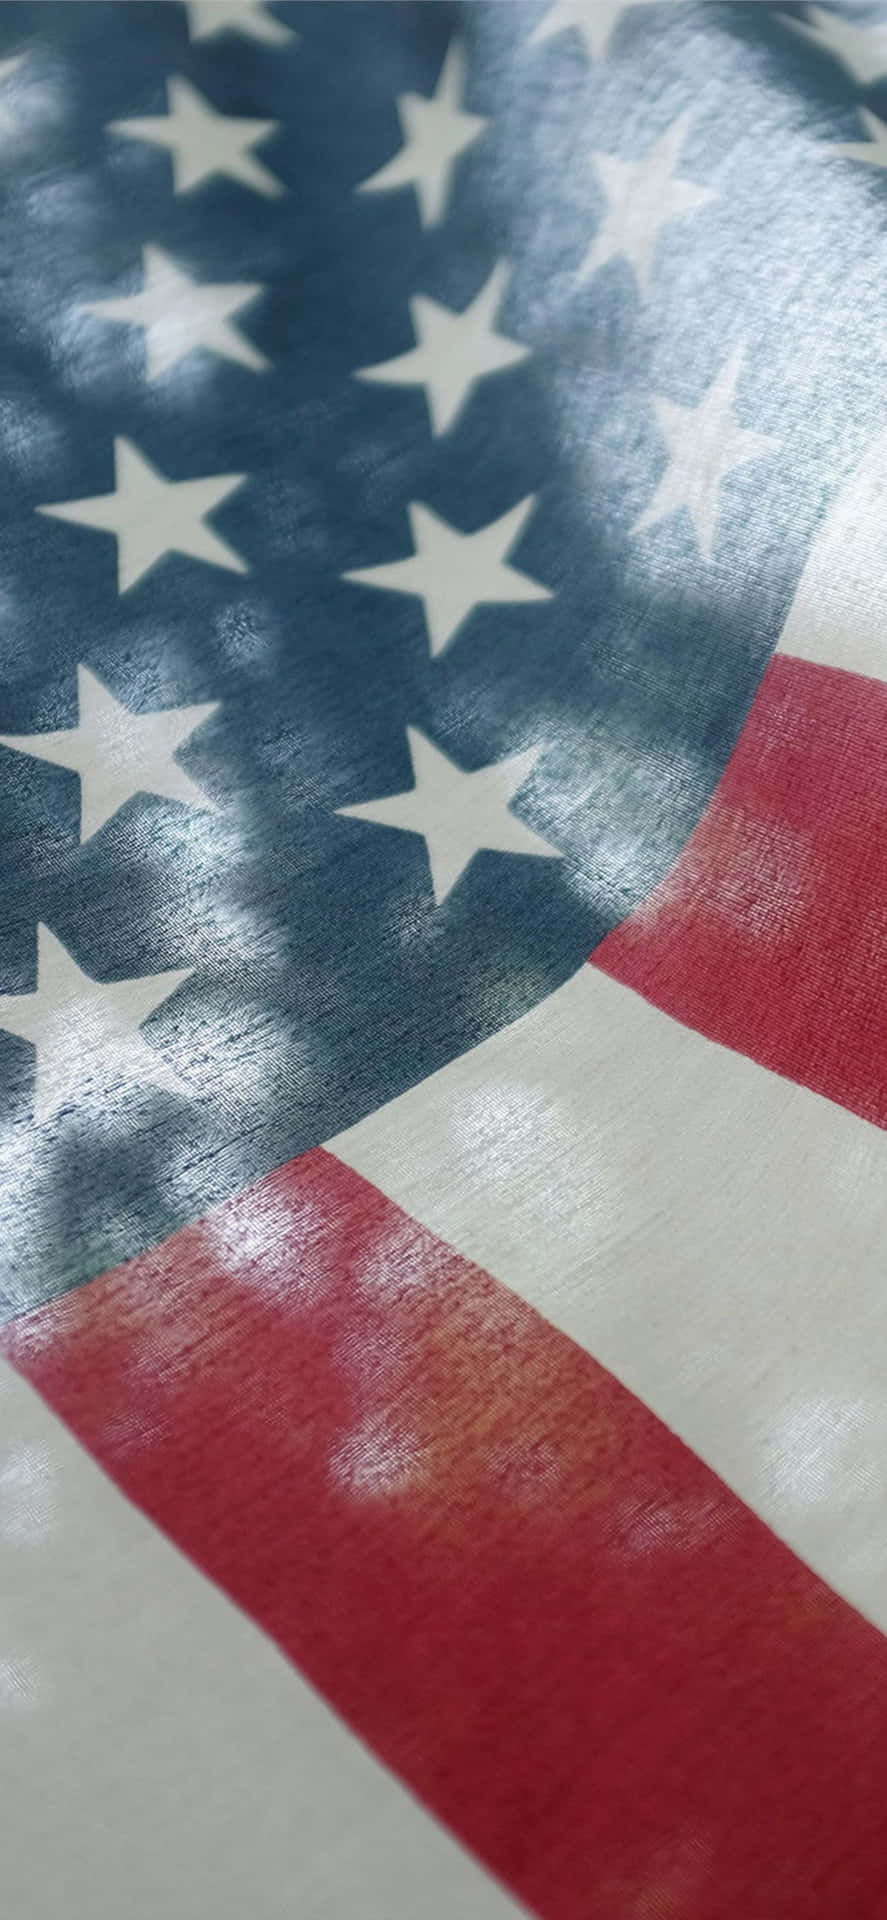 Enamerikansk Flagga Med Solens Strålar Som Skiner På Den. Wallpaper